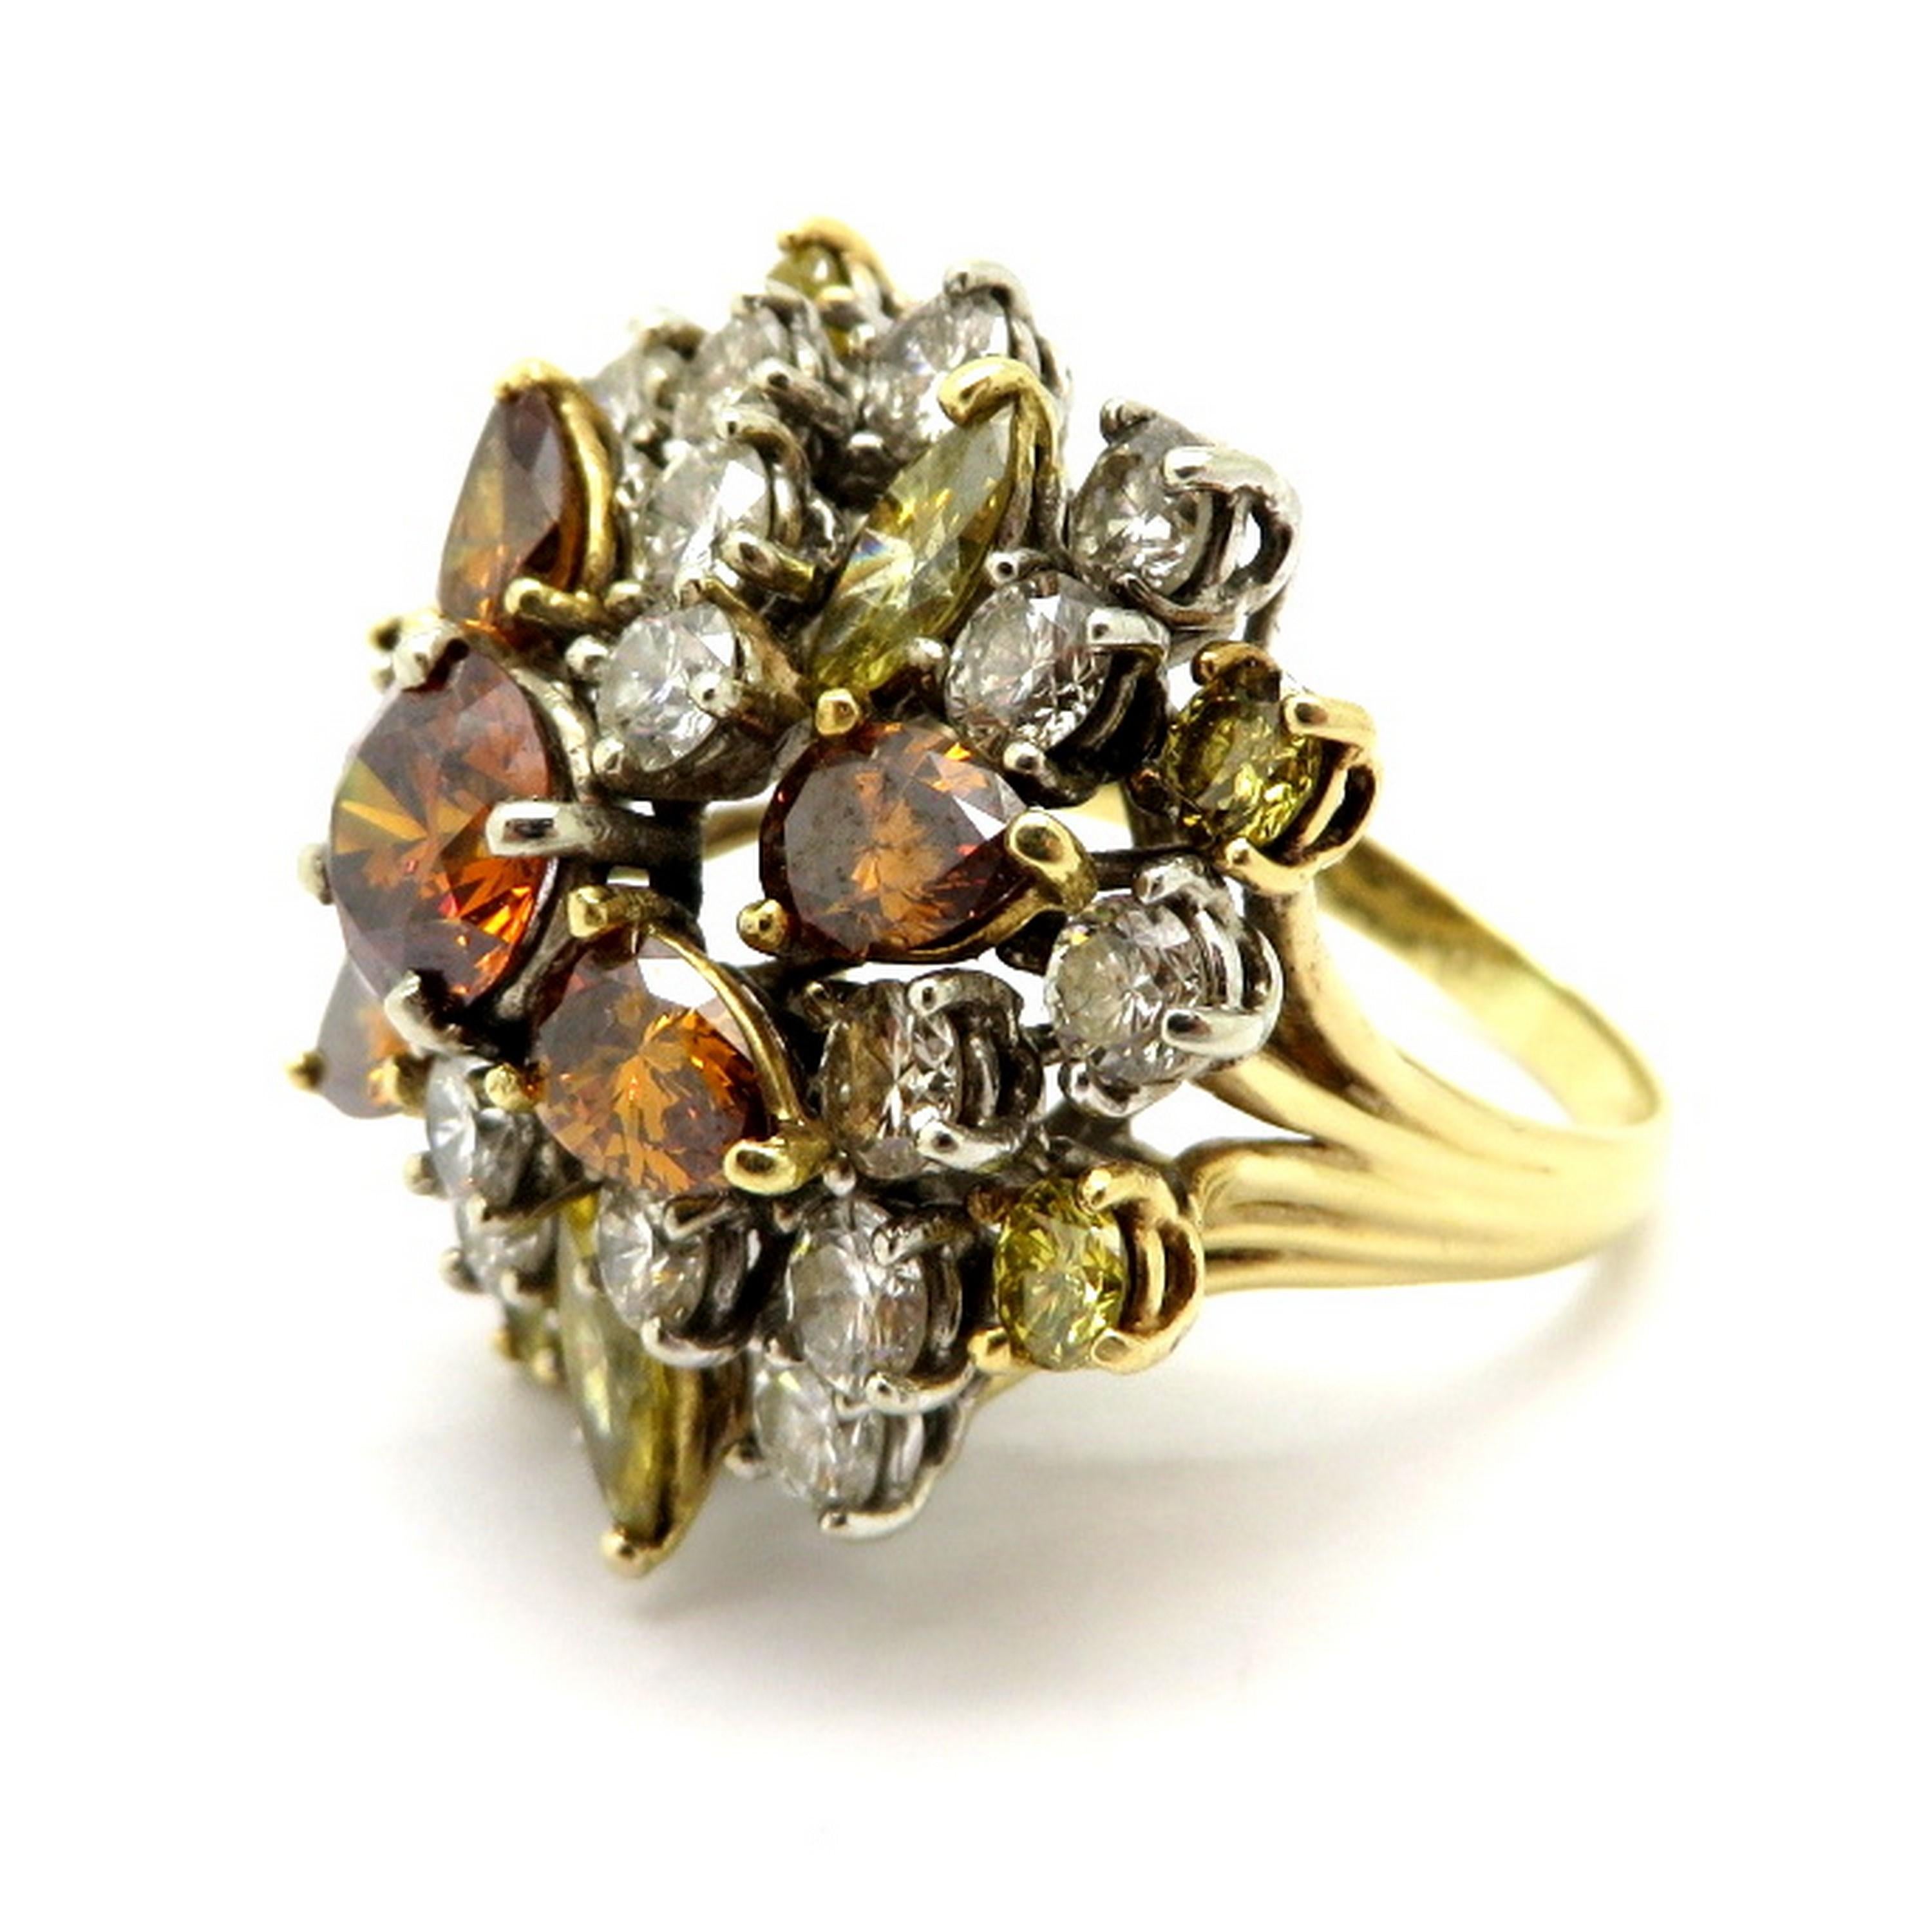 GIA-zertifizierte 18K zweifarbige Anwesen fancy braun und gelb Diamant-Cluster-Cocktail-Ring. Mit einem GIA-zertifizierten, tief bräunlich-orangefarbenen, runden Diamanten im Brillantschliff mit einem Gewicht von etwa 1,10 Karat und einer Reinheit